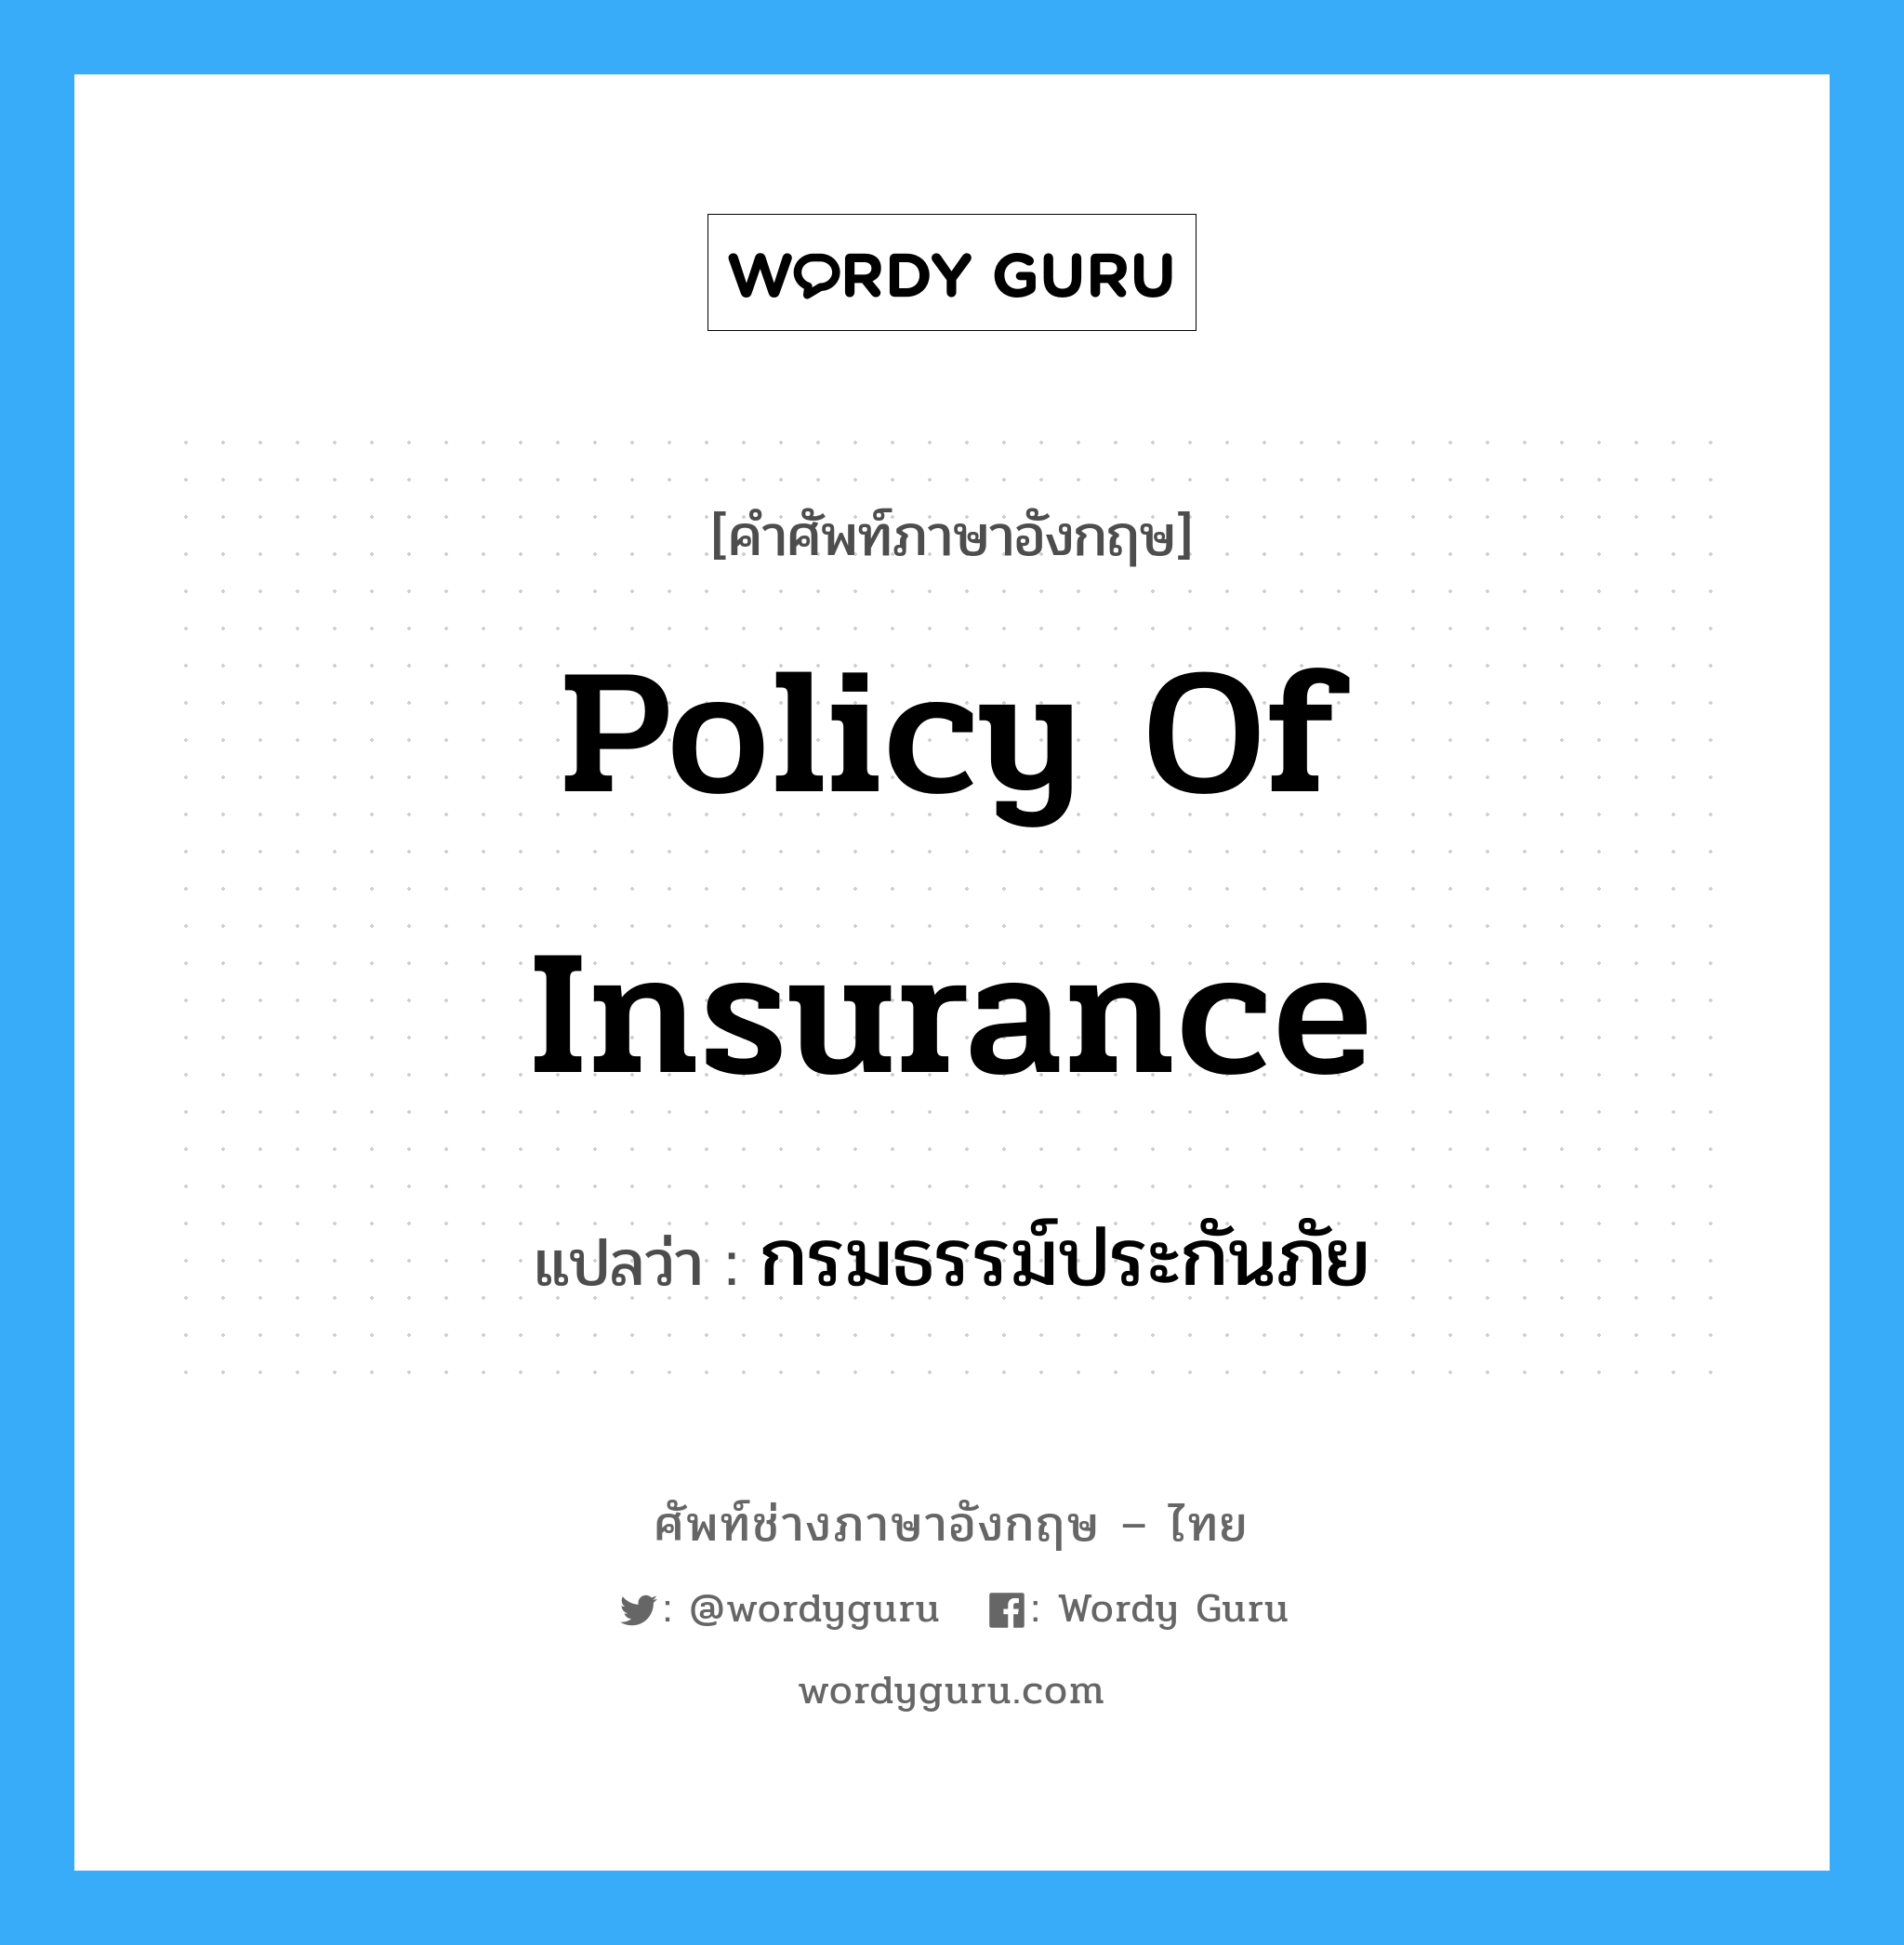 กรมธรรม์ประกันภัย ภาษาอังกฤษ?, คำศัพท์ช่างภาษาอังกฤษ - ไทย กรมธรรม์ประกันภัย คำศัพท์ภาษาอังกฤษ กรมธรรม์ประกันภัย แปลว่า policy of insurance